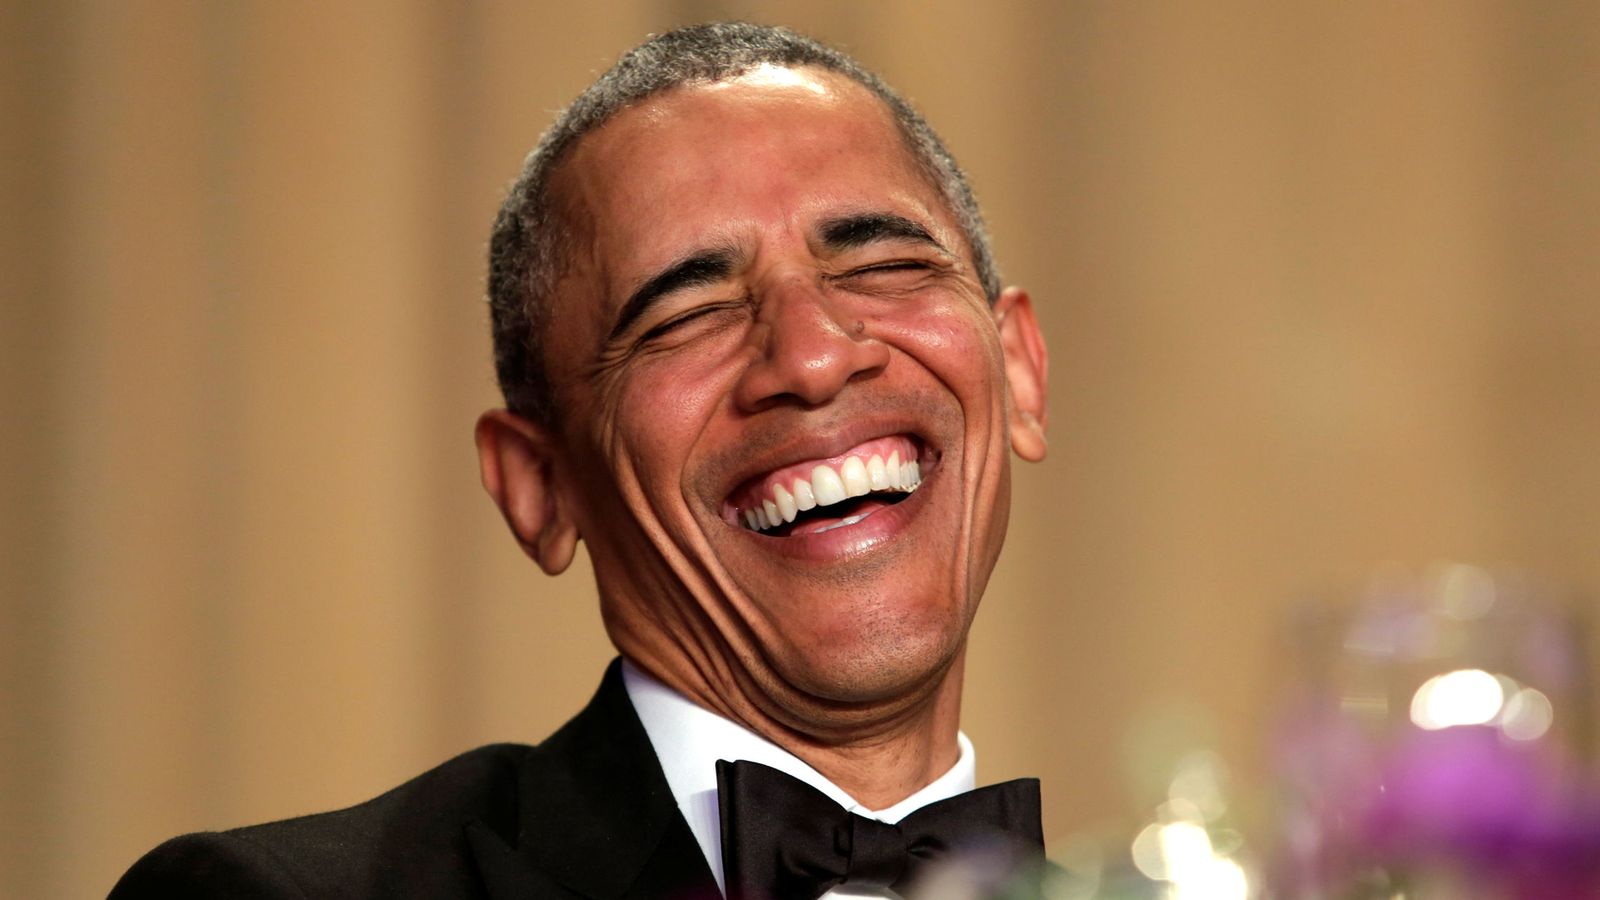 Foto: El presidente Obama, riendo en una imagen de archivo (Reuters)